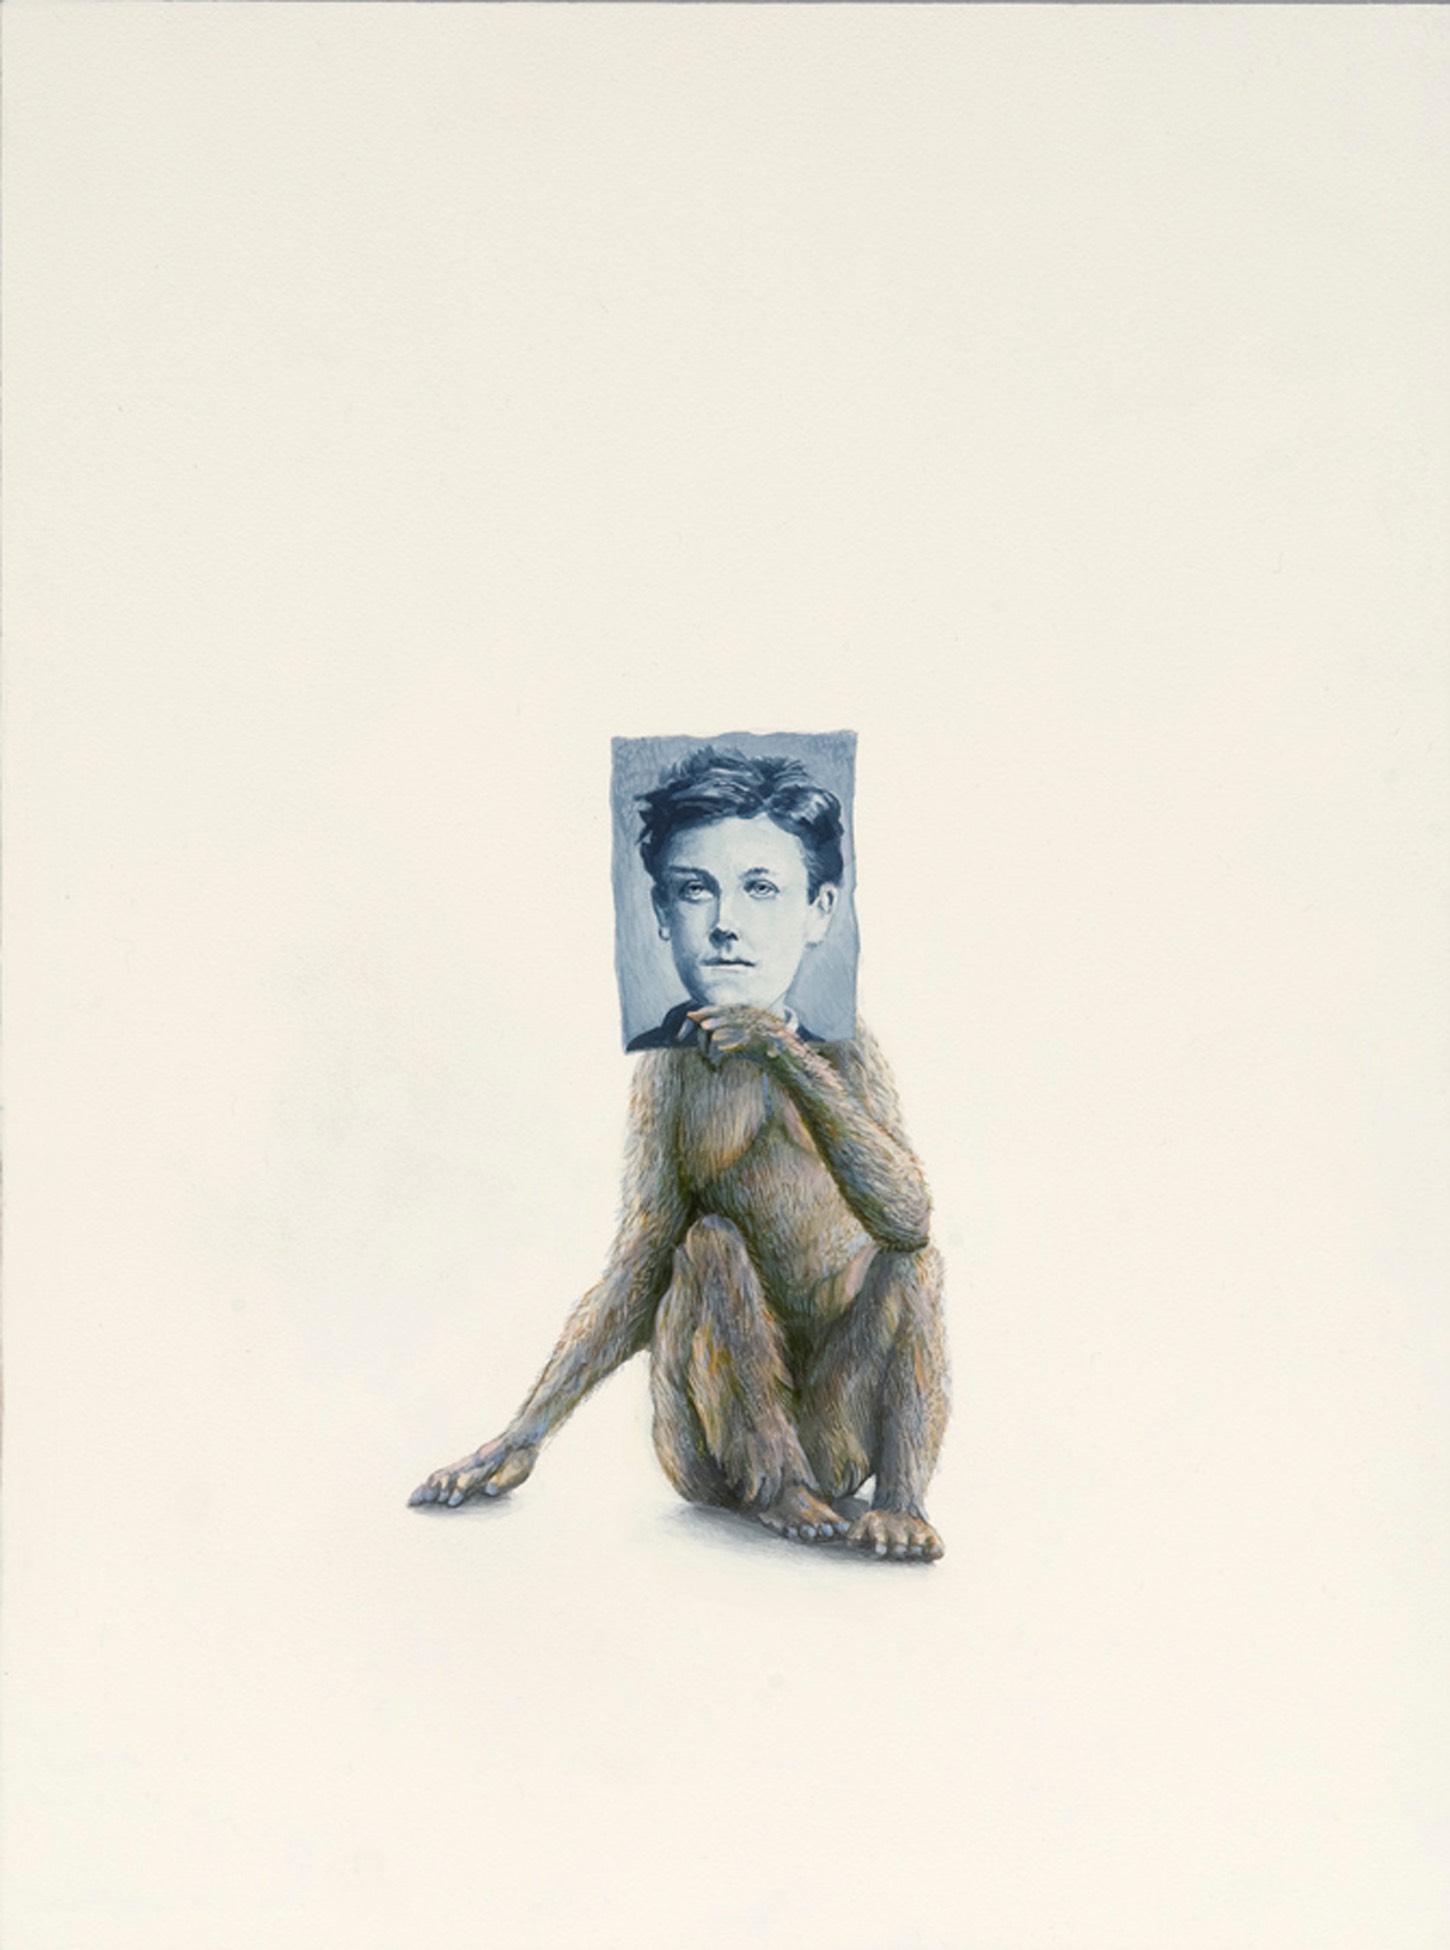 Monkey (Rimbaud), 2009